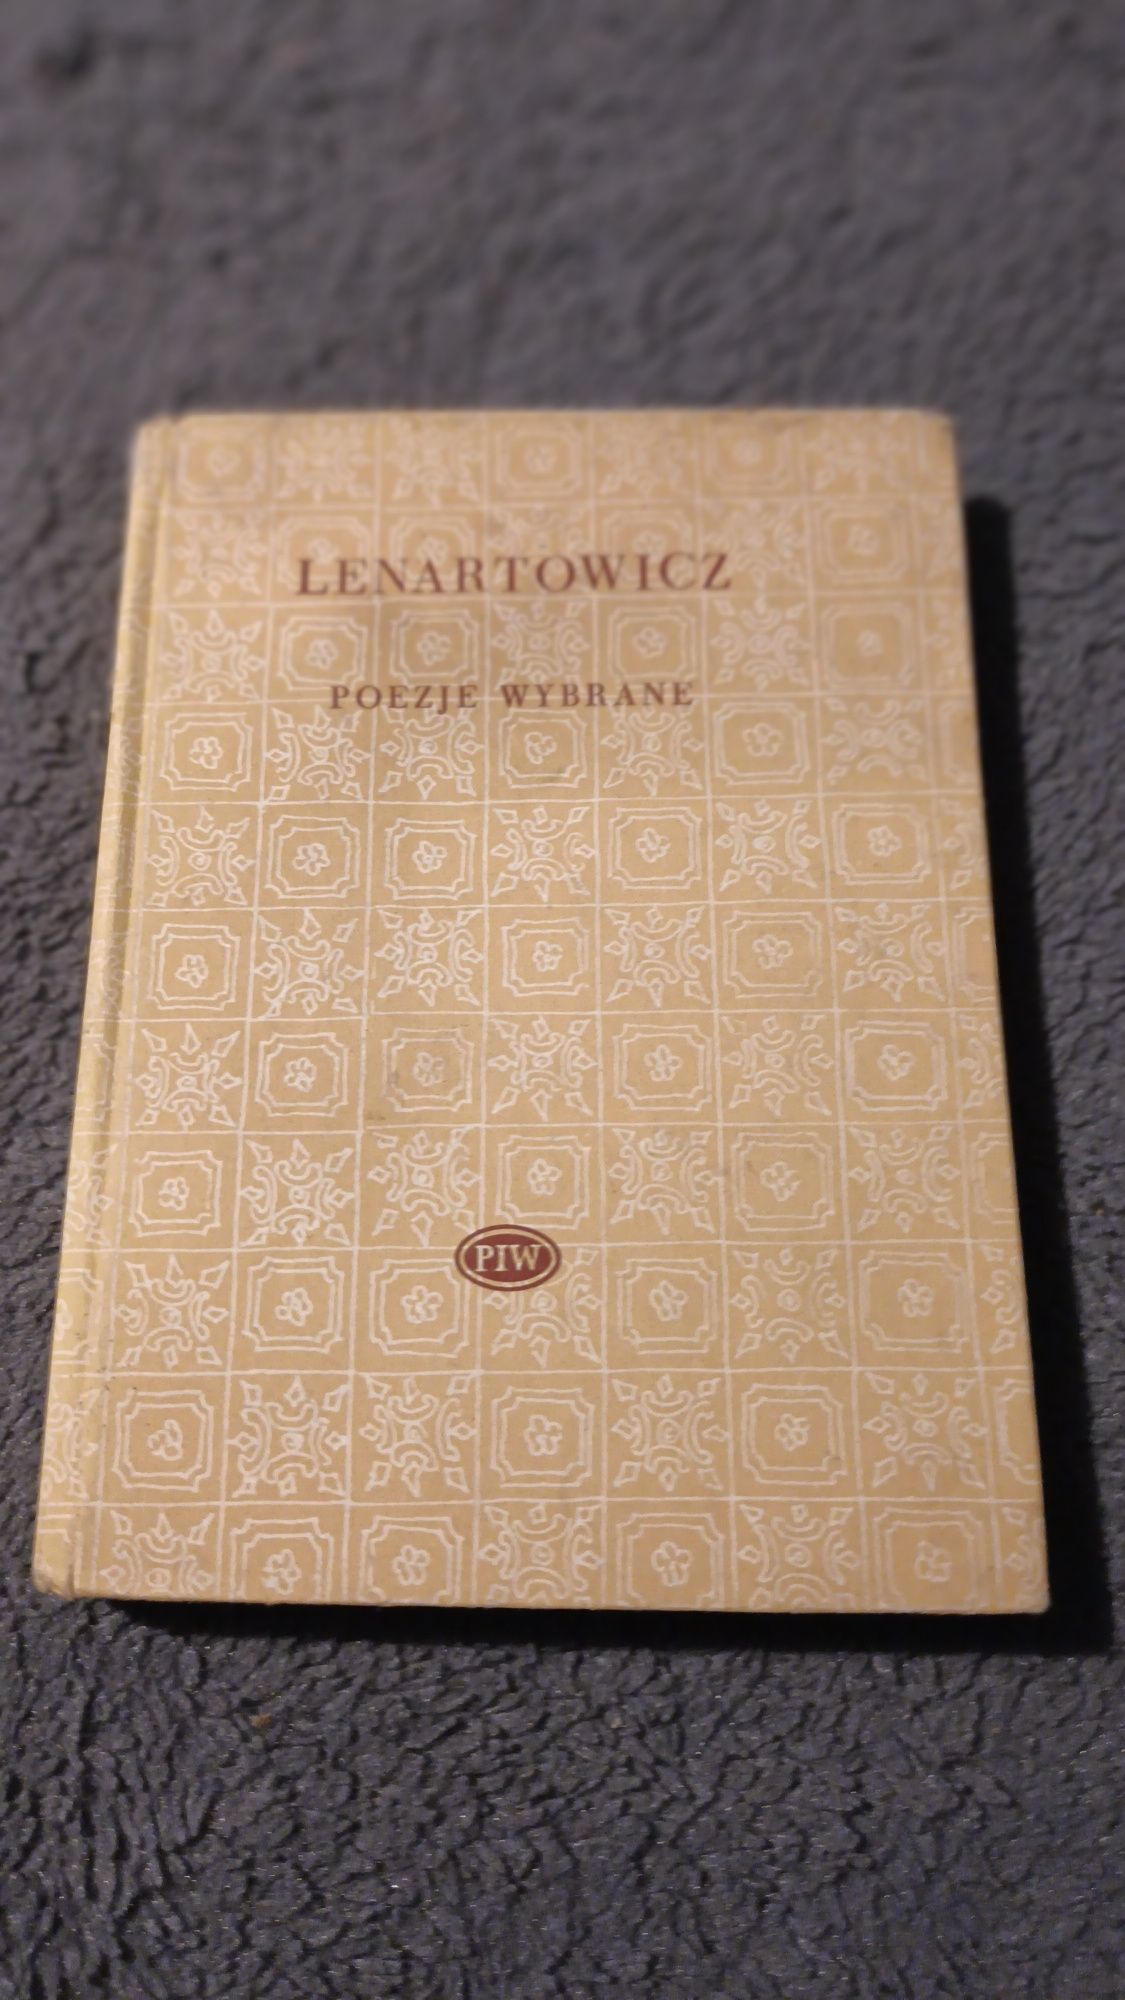 Książka,,Poezje wybrane "Lenartowicz